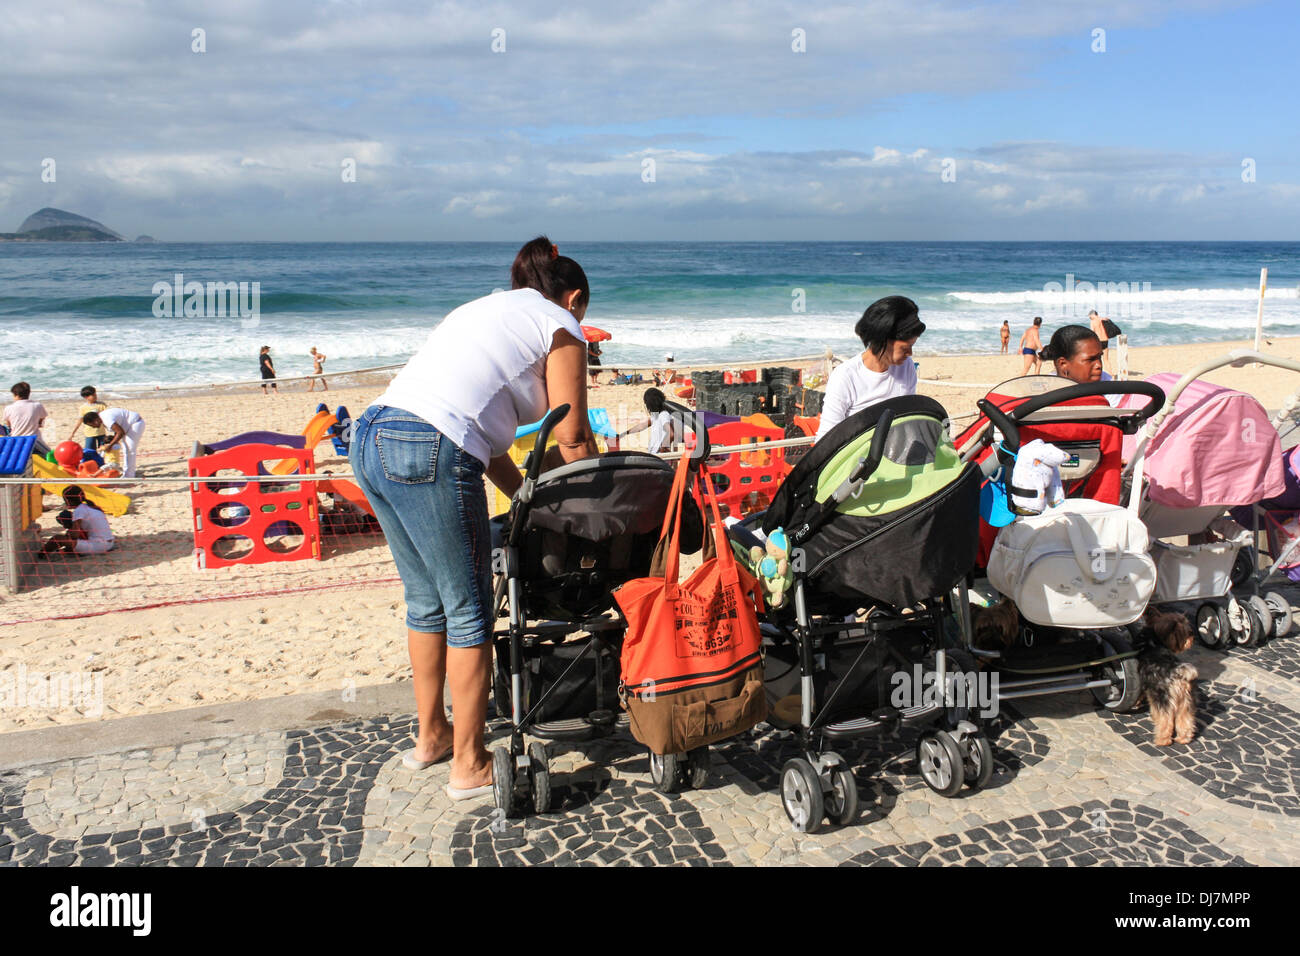 Cameriere brasiliano con carrozzine sulla spiaggia di Leblon, Rio de Janeiro, Brasile Foto Stock